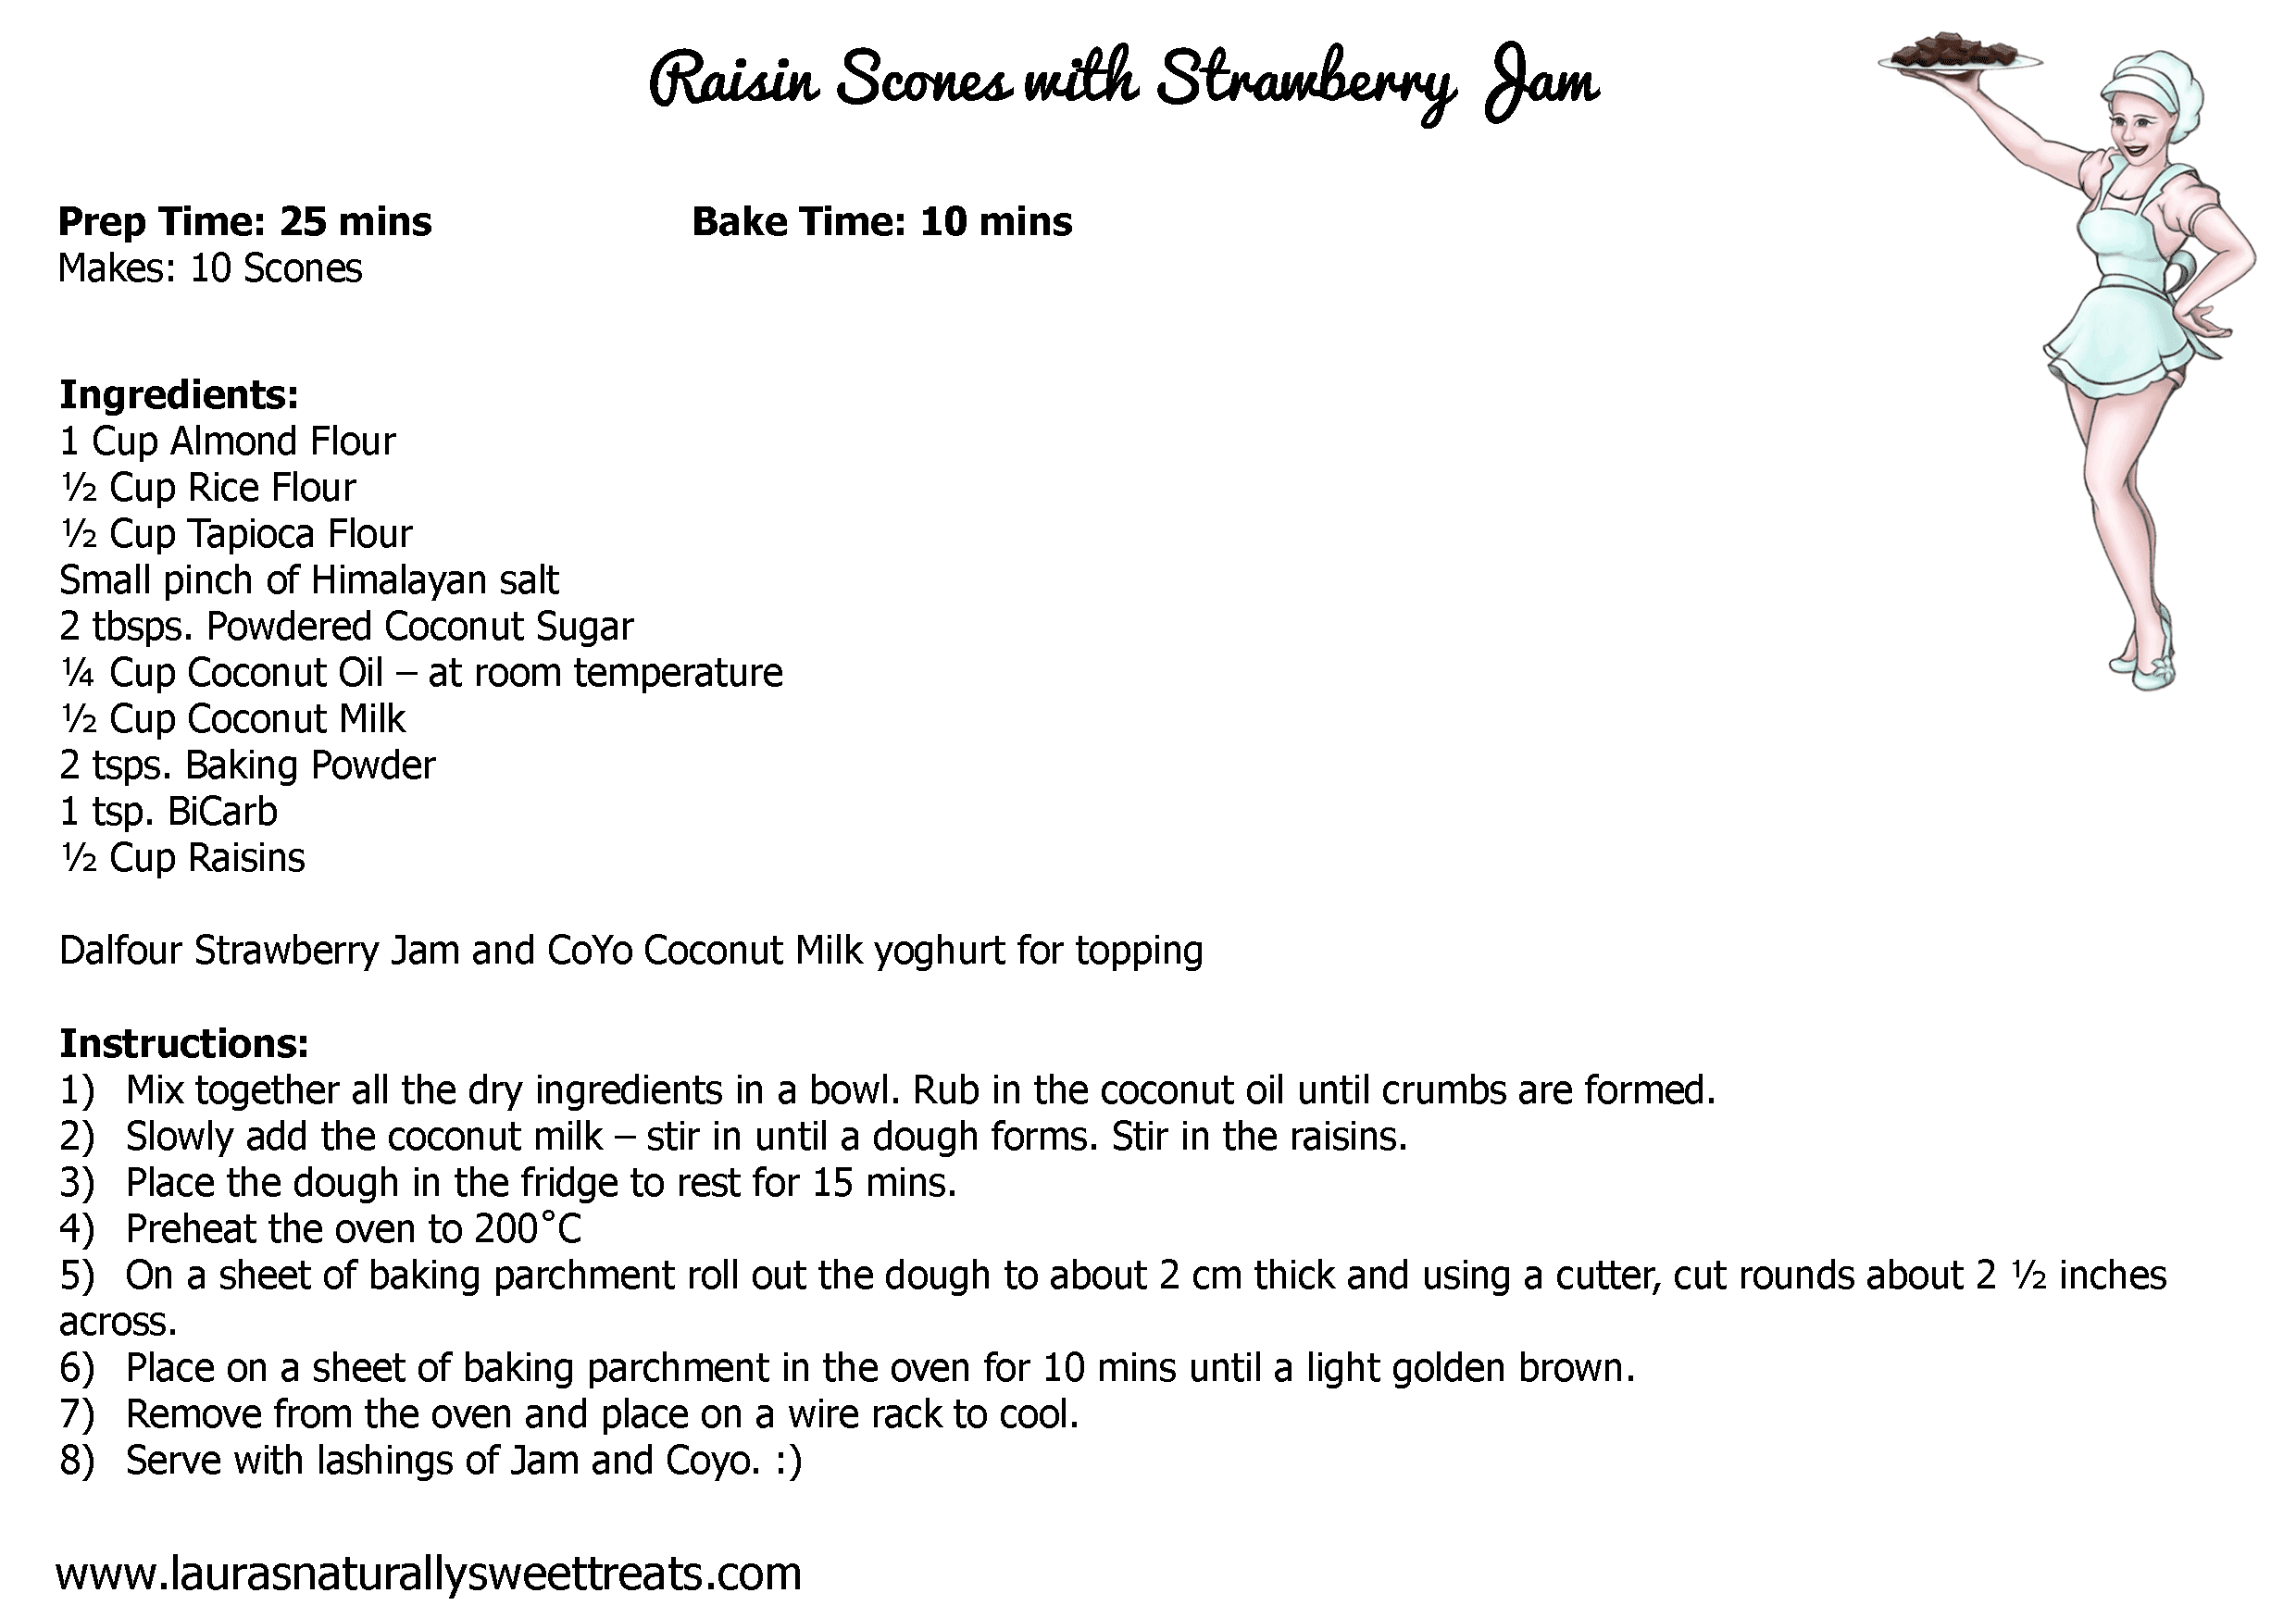 raisin scones with strawberry jam recipe card